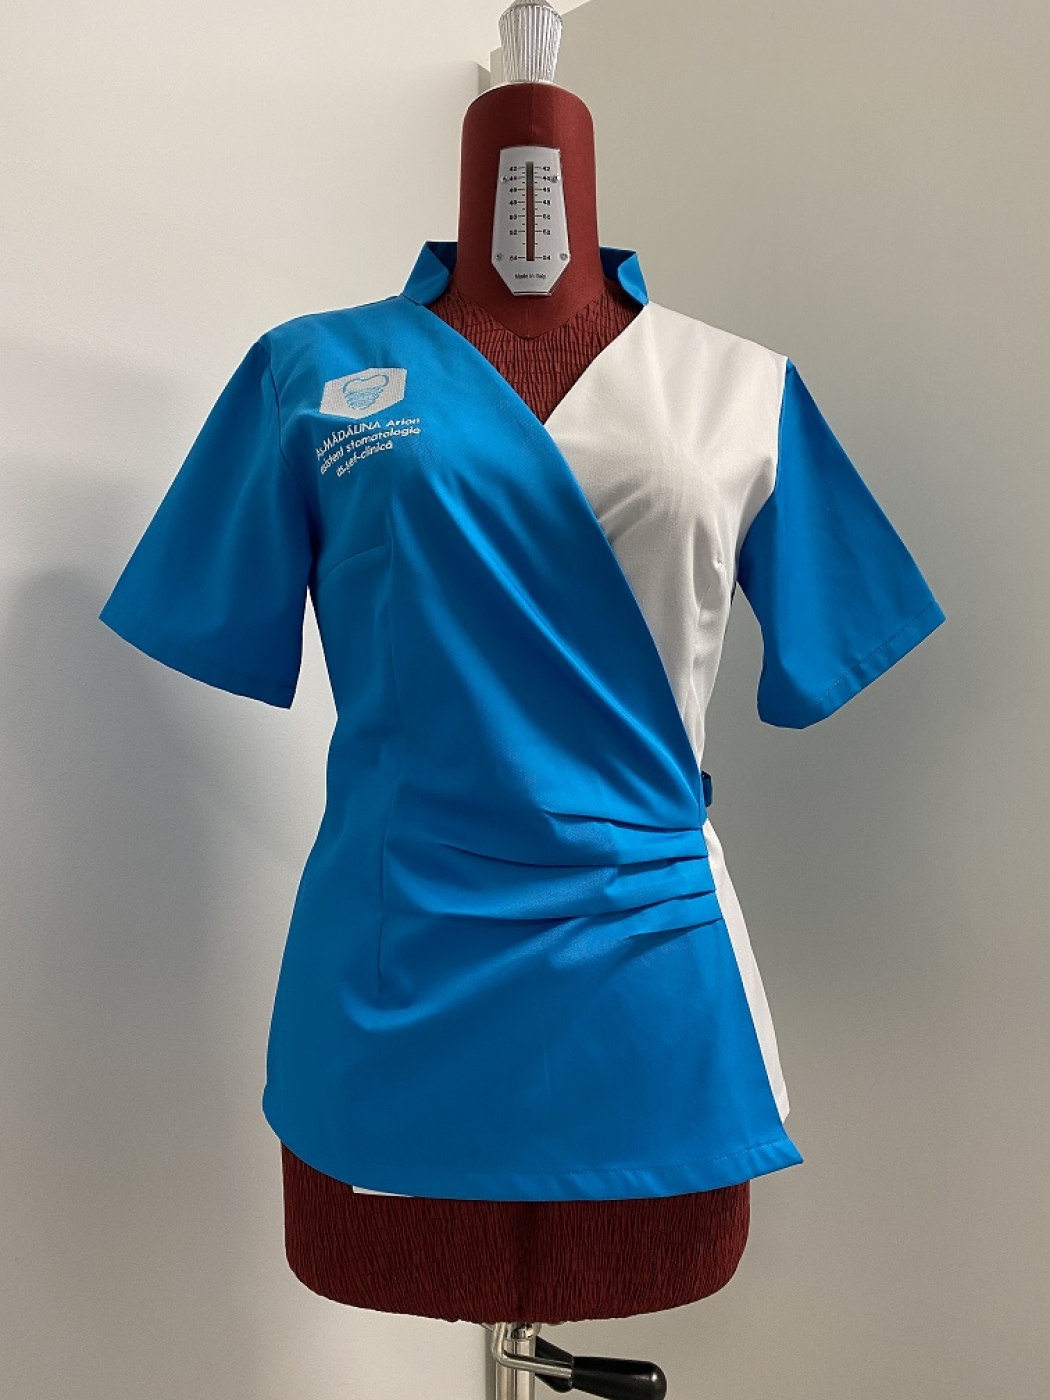 Galerie foto uniforma medicala personalizata cu broderie logo clinica stomatologica Fresno Clinic